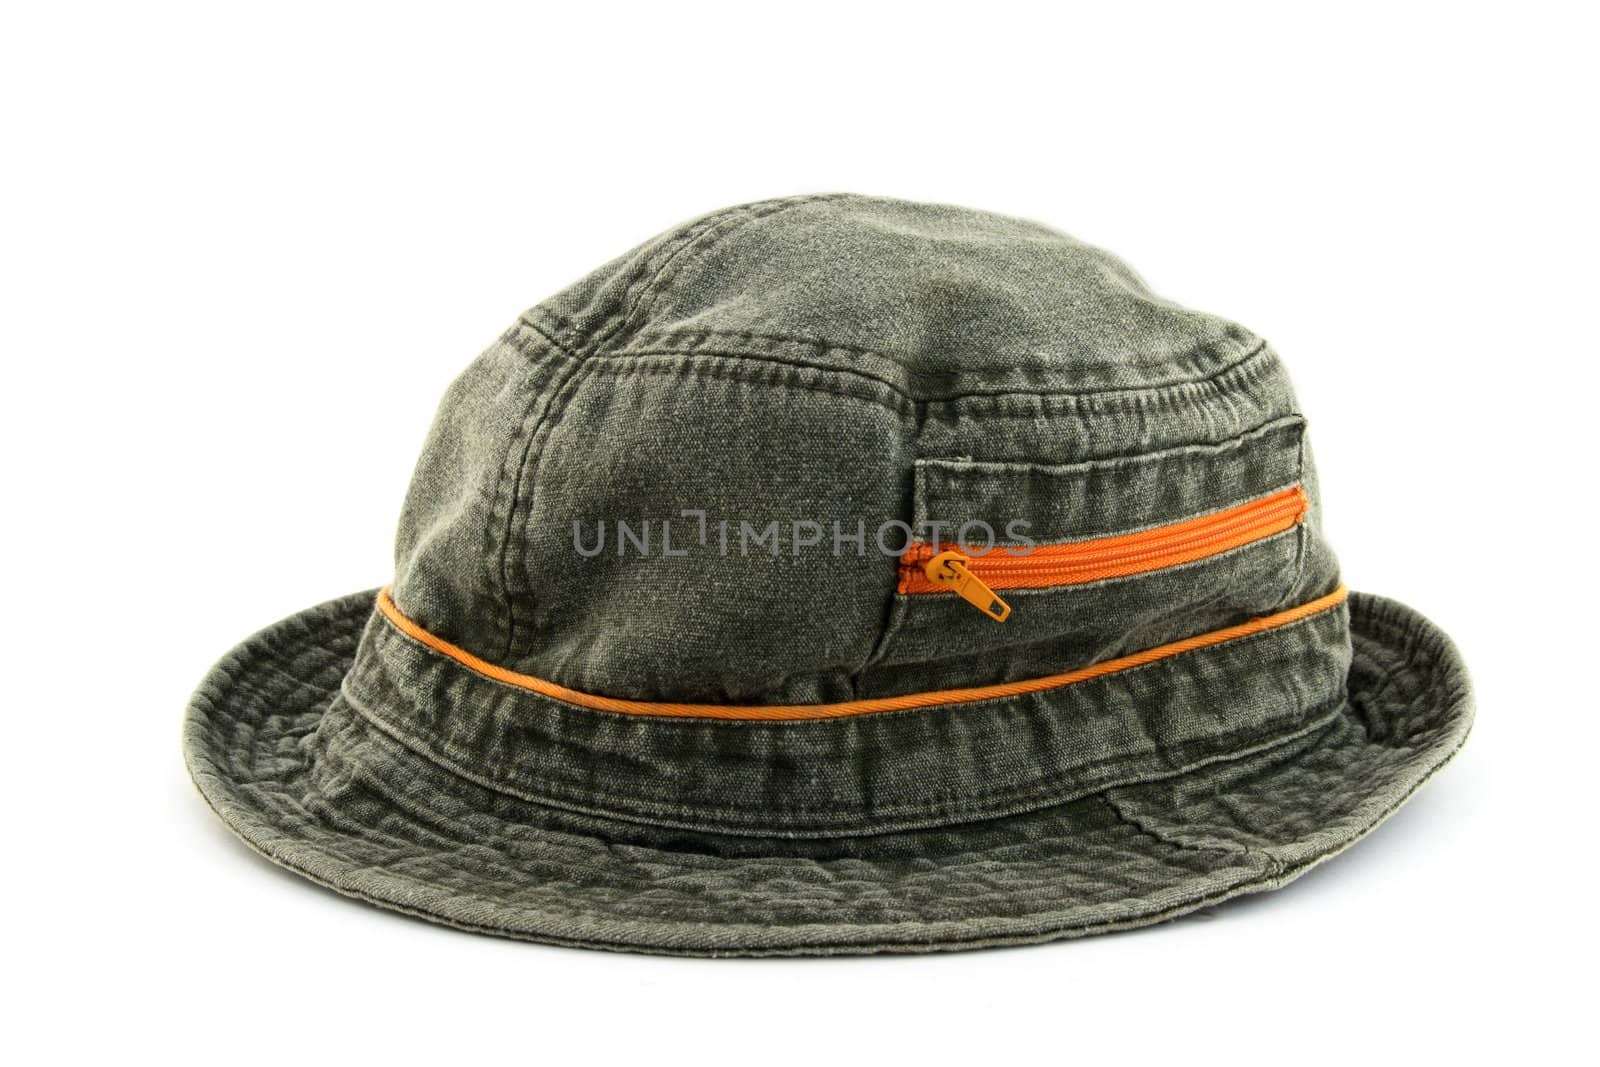 Denim hat with orange zipper, on white background.